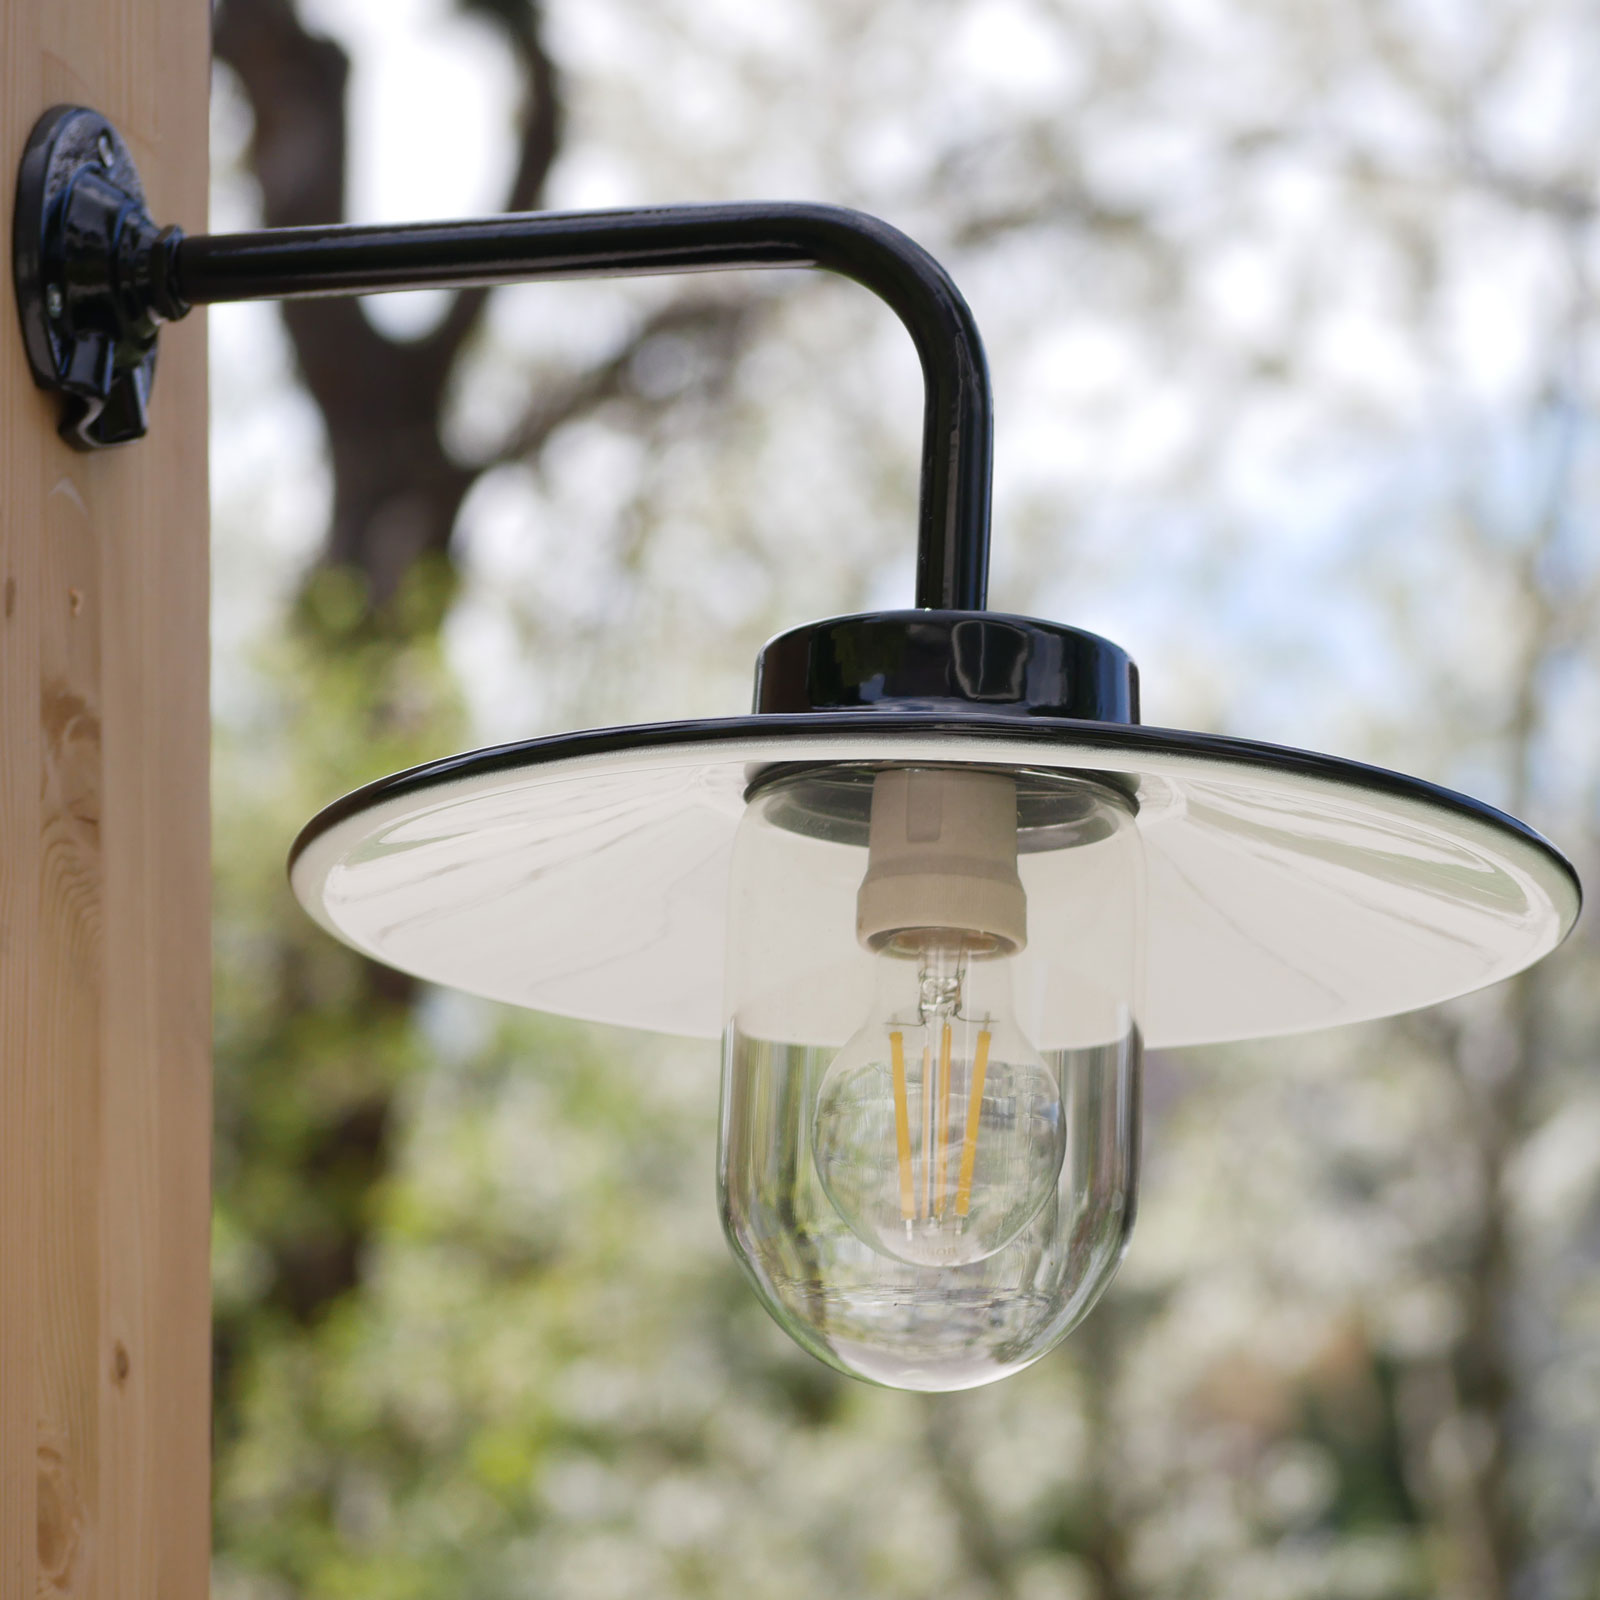 French Barn Lamp with Enameled Shade 38-25: Klassische Hofleuchte: schwarze Außenlampe mit Emaille-Schirm und klarem Glas